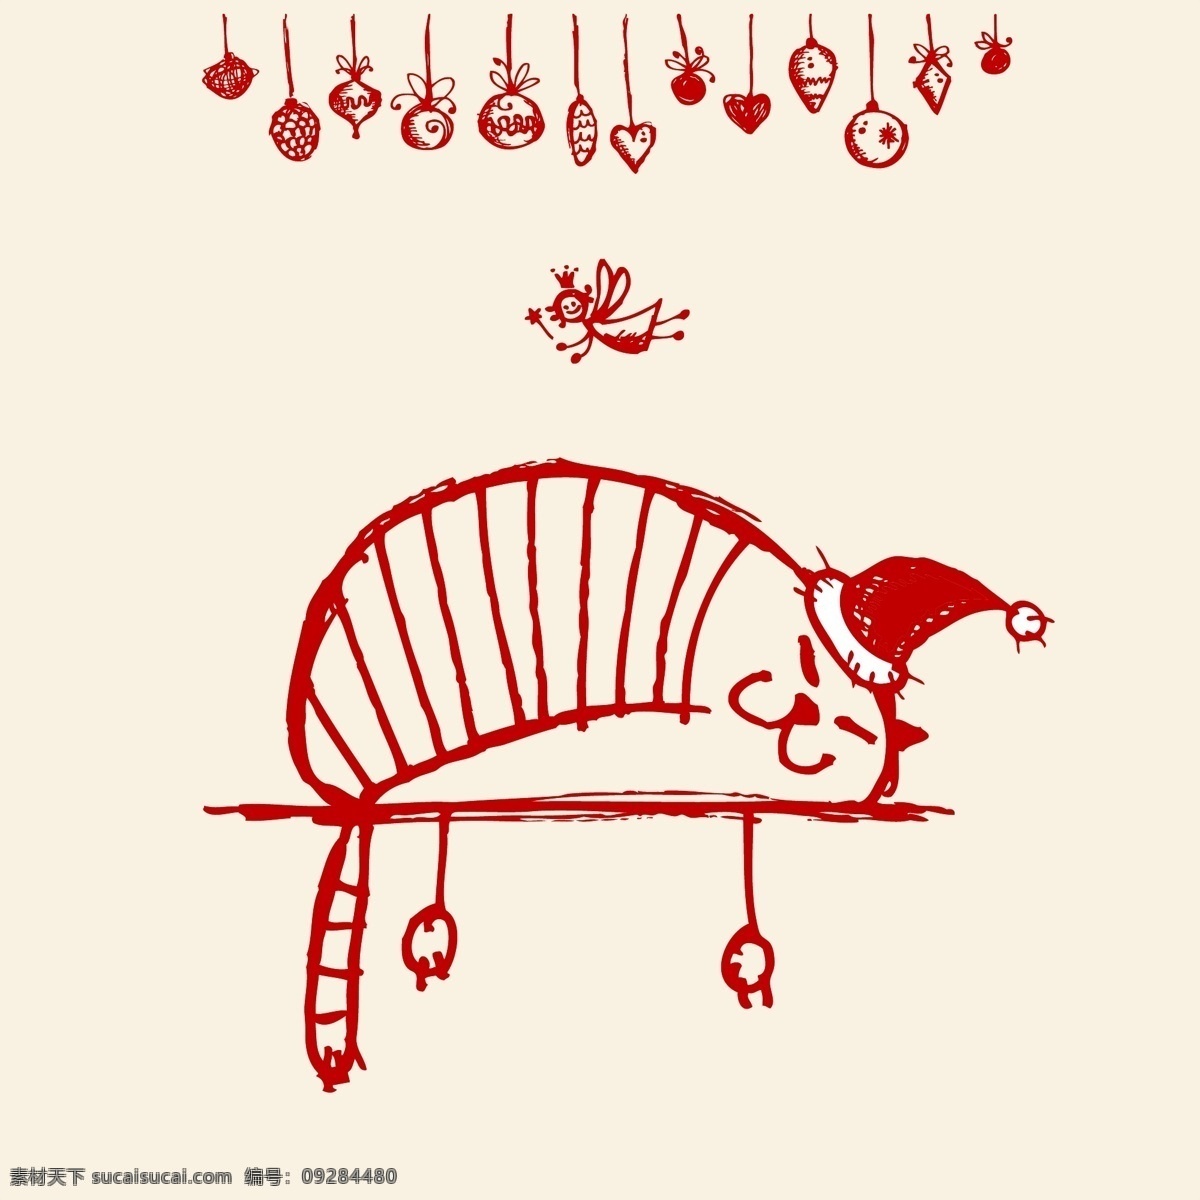 圣诞猫咪 猫咪 猫 圣诞 手绘 矢量 圣诞主题 圣诞节 节日素材